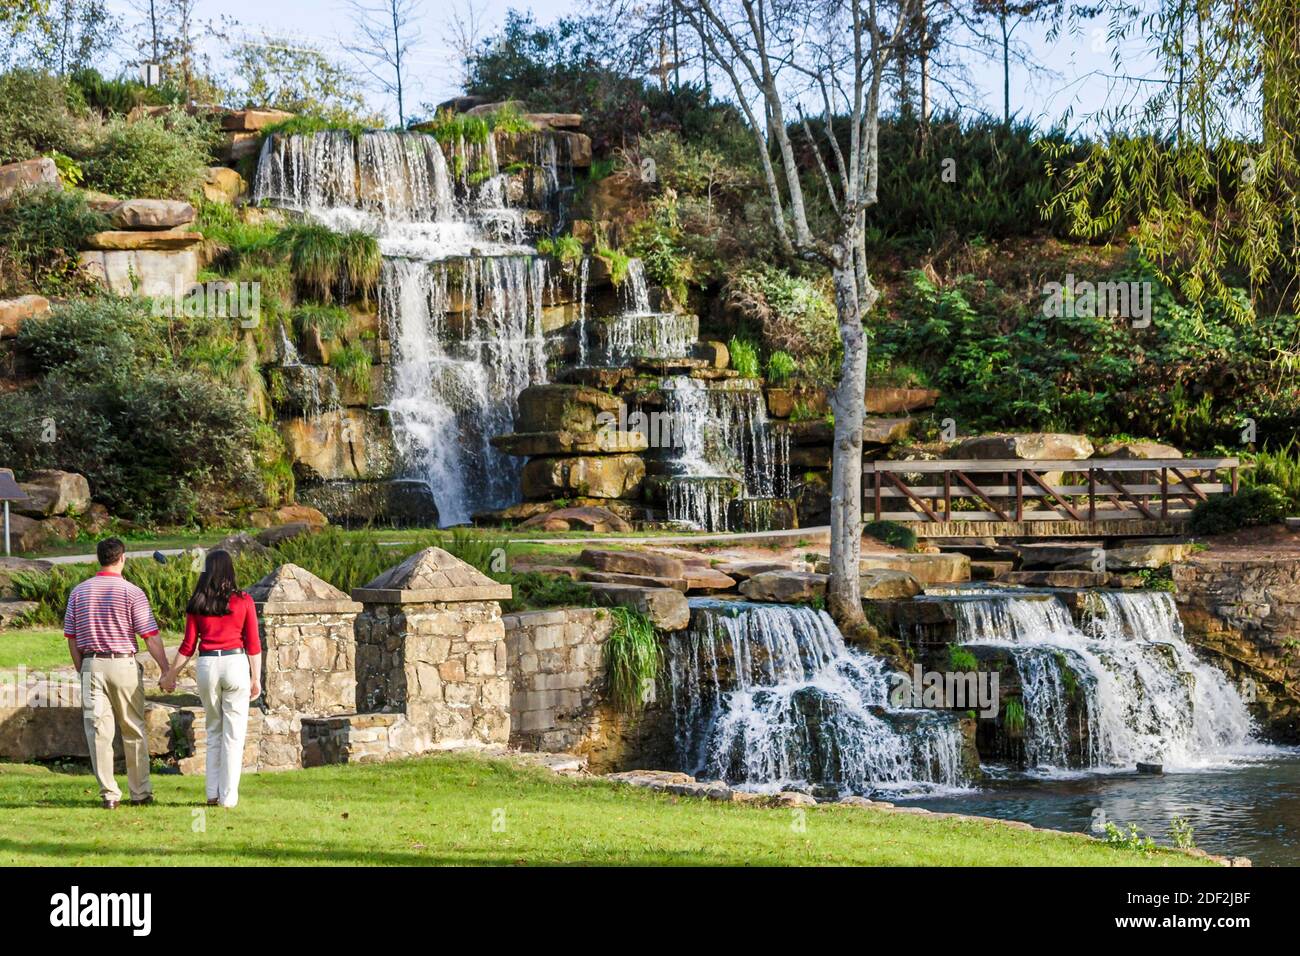 Alabama Tuscumbia Spring Creek Park Cold Water Falls, der größte von Menschen gemachte Wasserfall aus Naturstein der Welt, Paar, Mann, Frau, Stockfoto